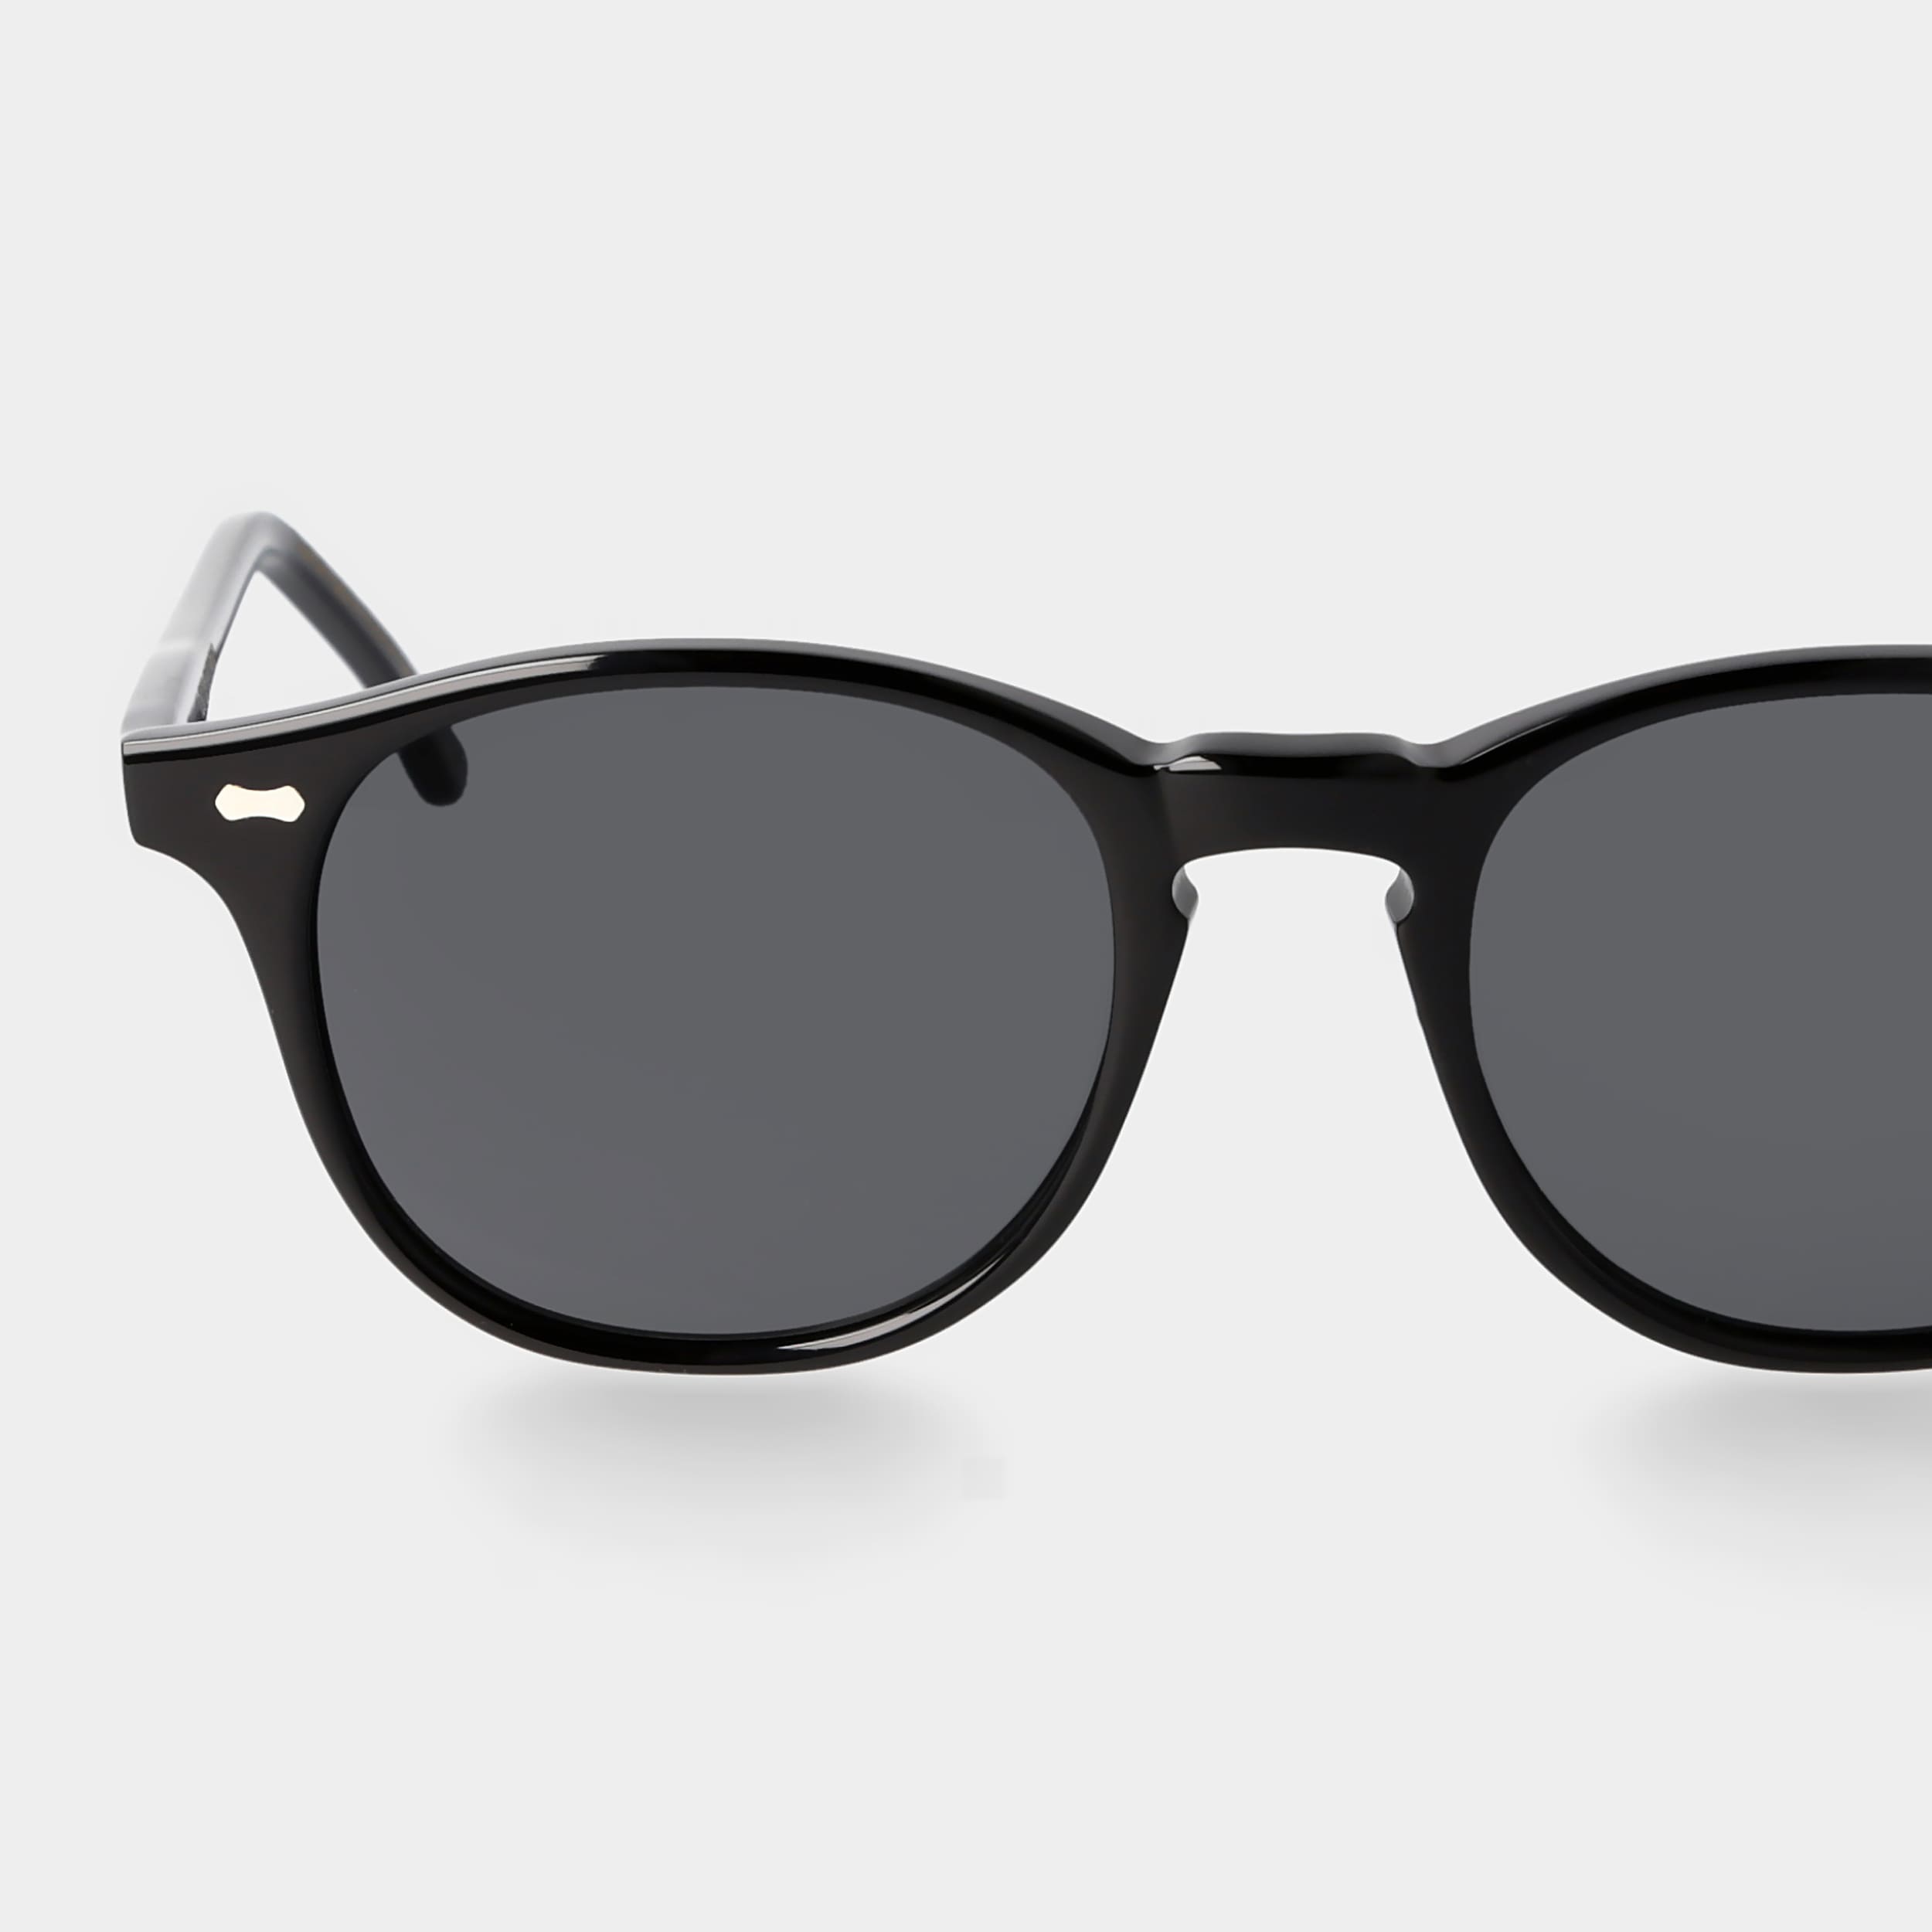 Schwarze Sonnenbrille mit grauen Gläsern: Shetland